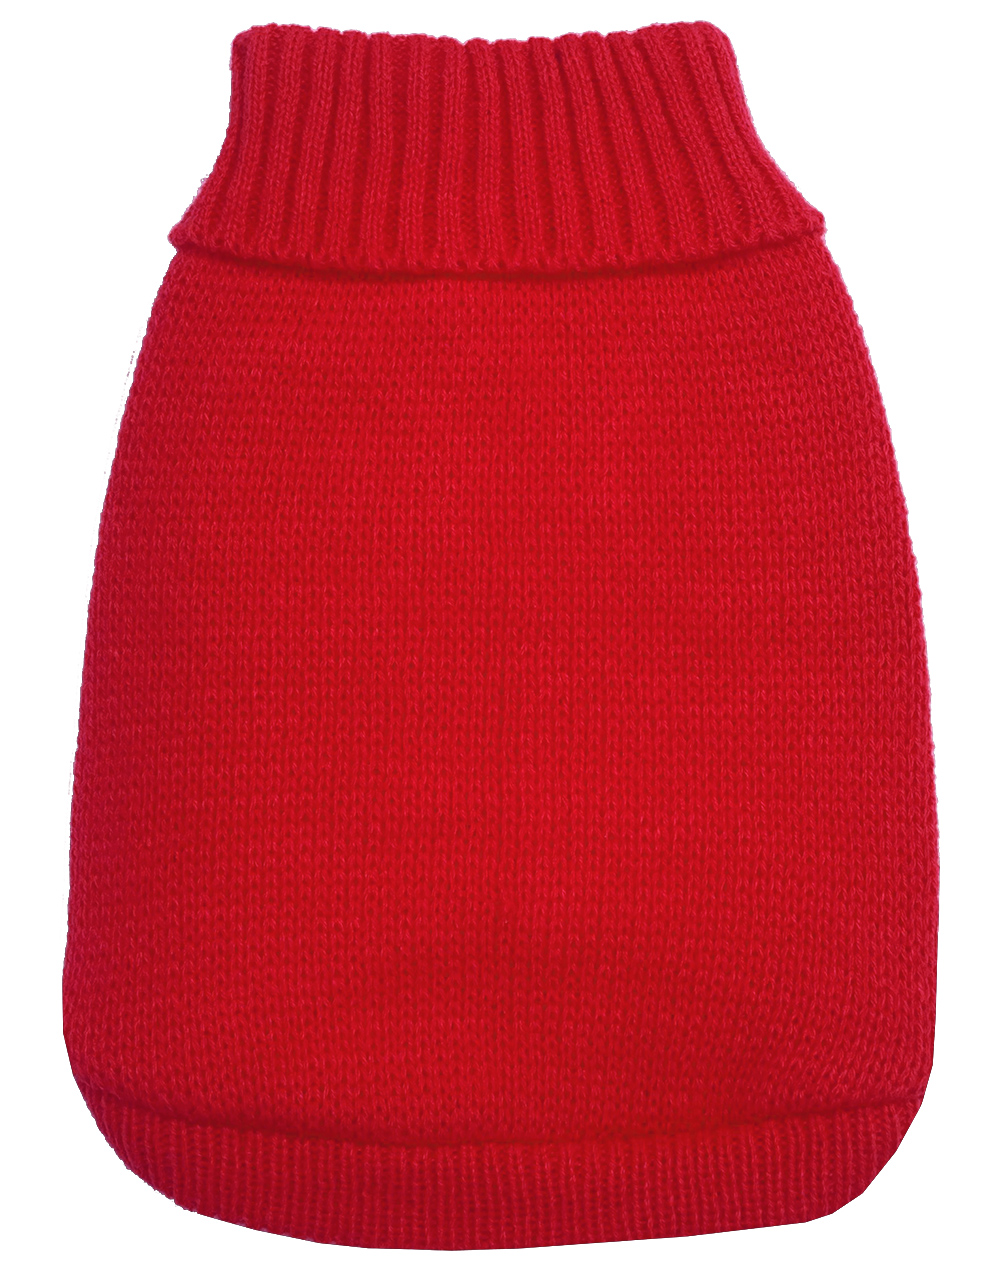 Knit Pet Sweater Red Size XXXL